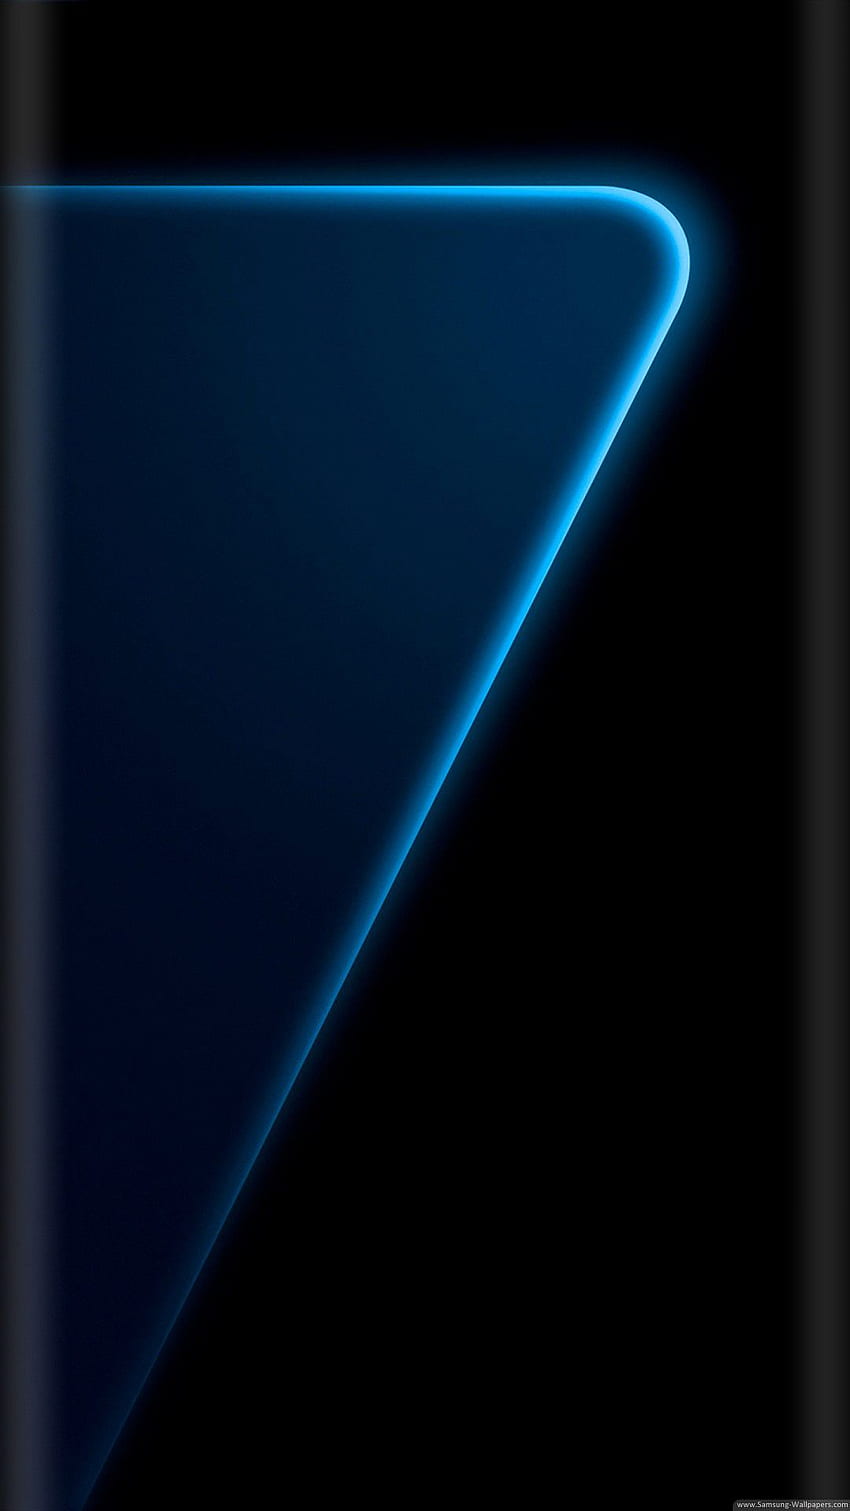 Khóa màn hình Samsung S7 Edge sẽ giữ cho thông tin của bạn luôn được an toàn, đặc biệt là khi bạn không sử dụng điện thoại. Tận hưởng những thiết lập an ninh của khóa màn hình cùng với hình ảnh độc đáo để tạo nên trải nghiệm tuyệt vời nhất.